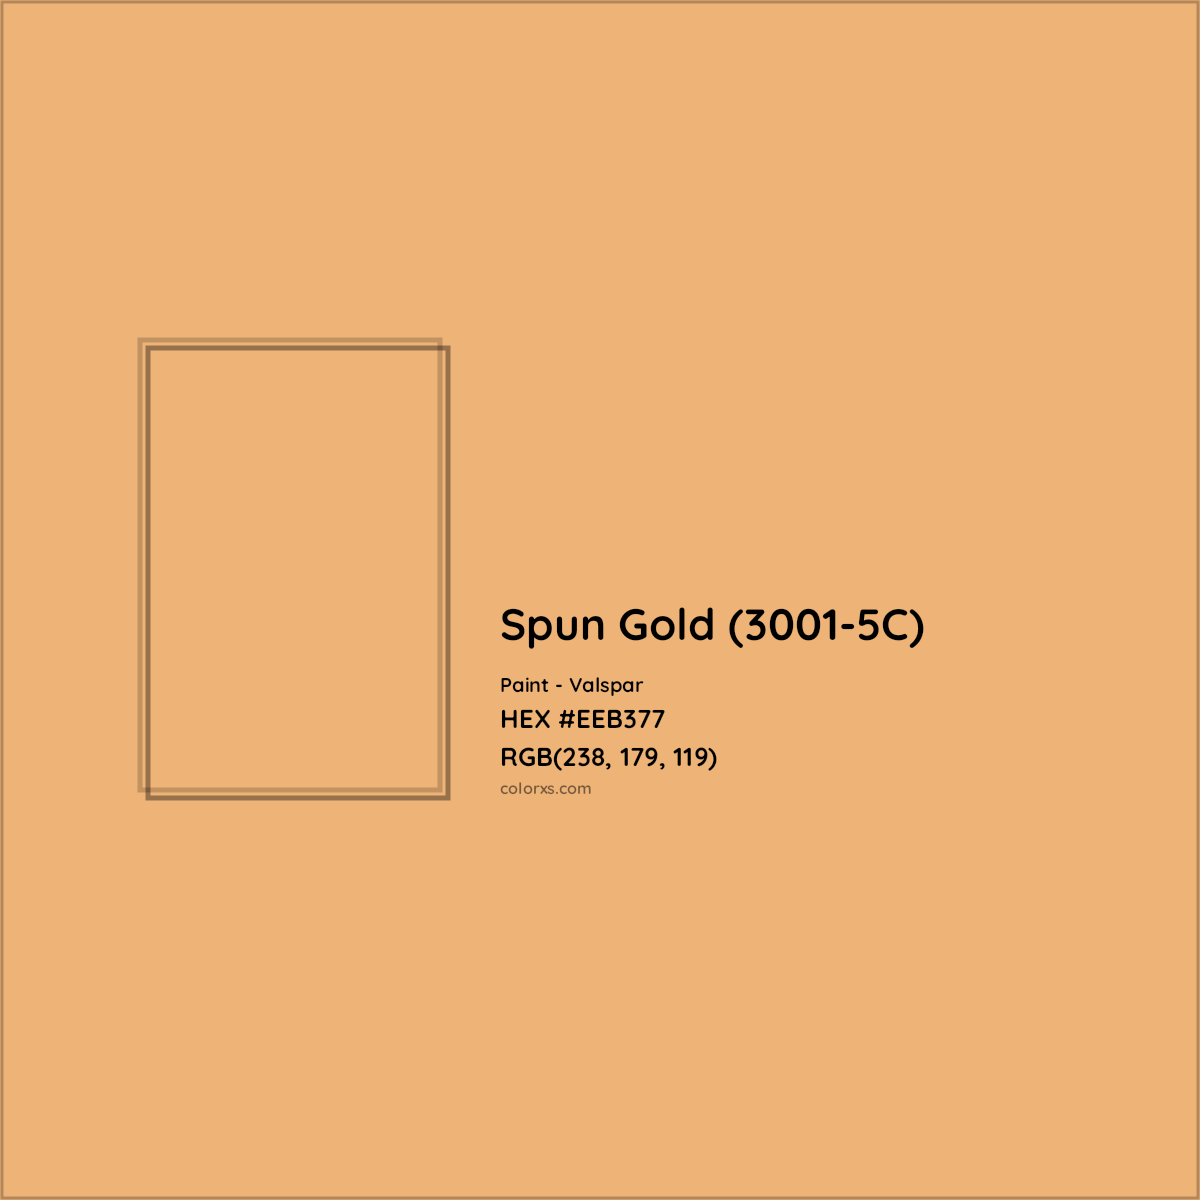 HEX #EEB377 Spun Gold (3001-5C) Paint Valspar - Color Code